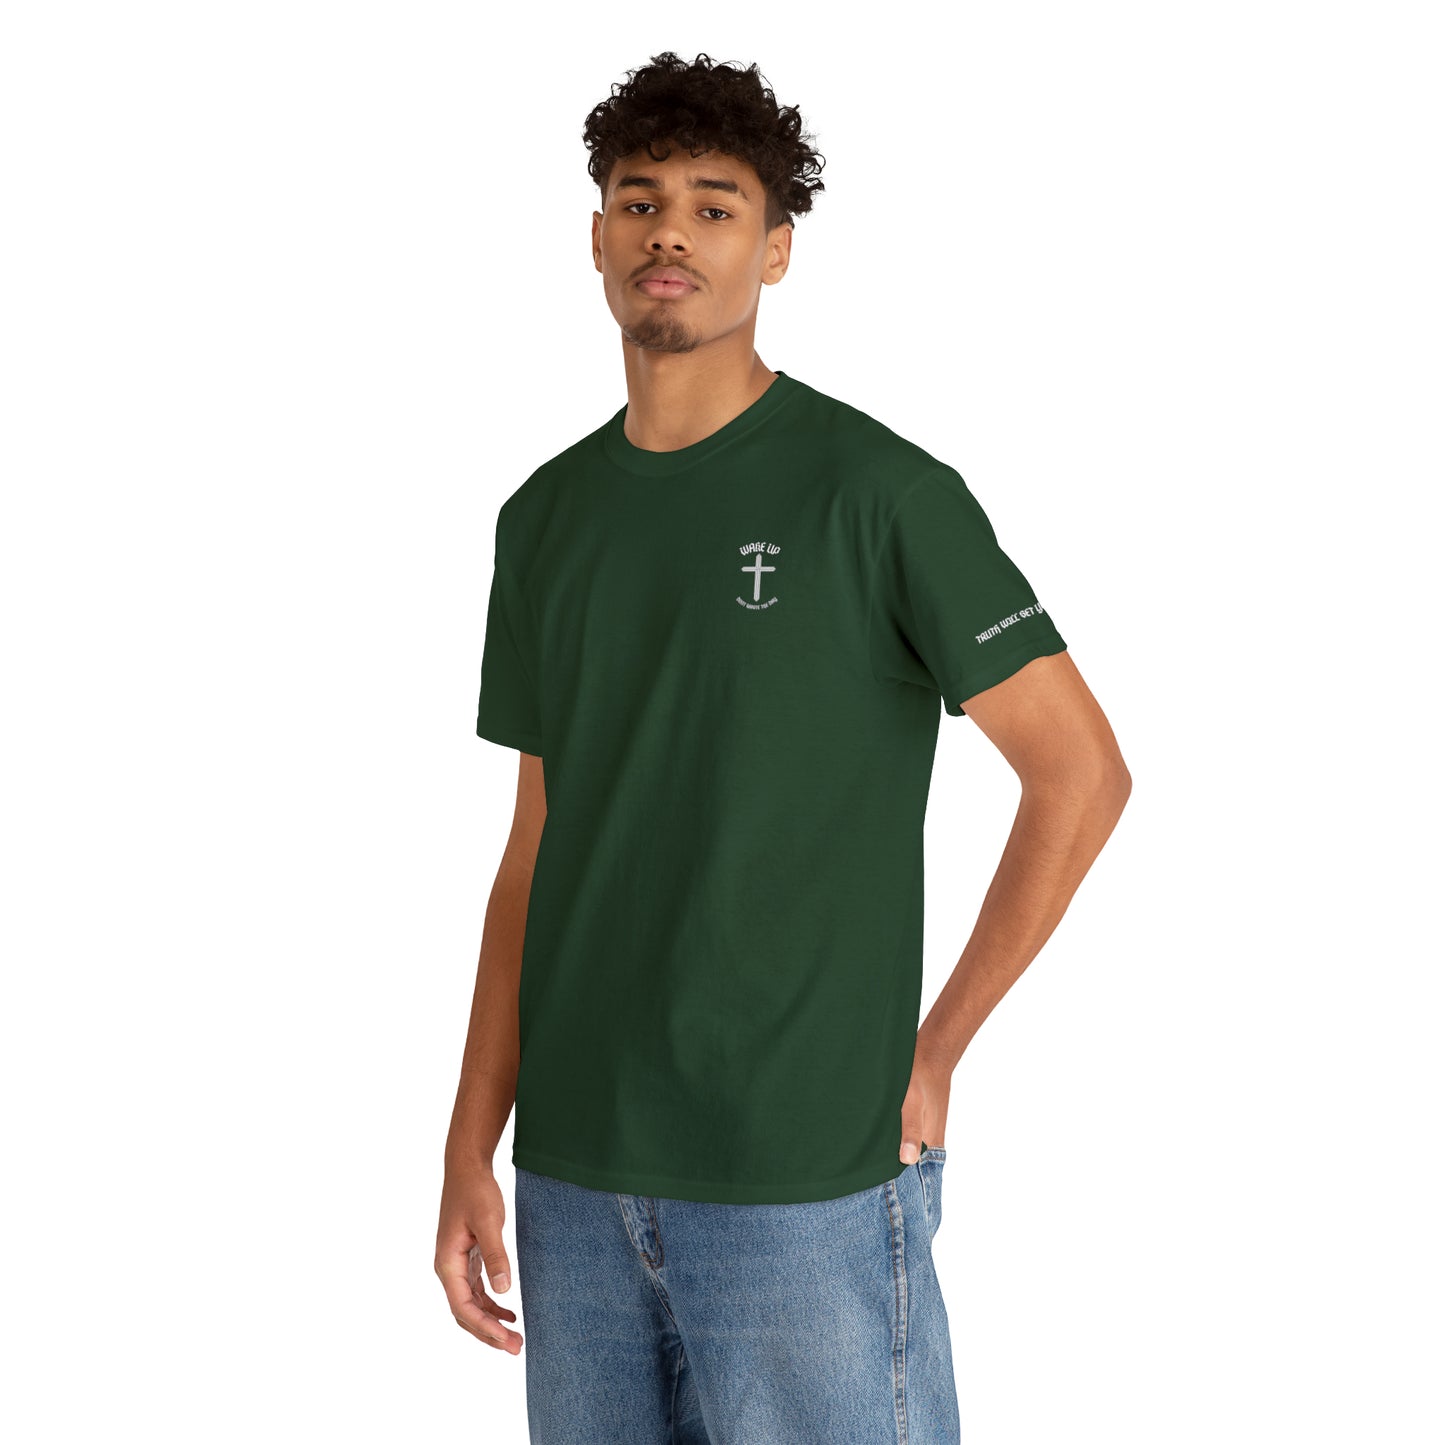 T.W.S.Y.F T-Shirt